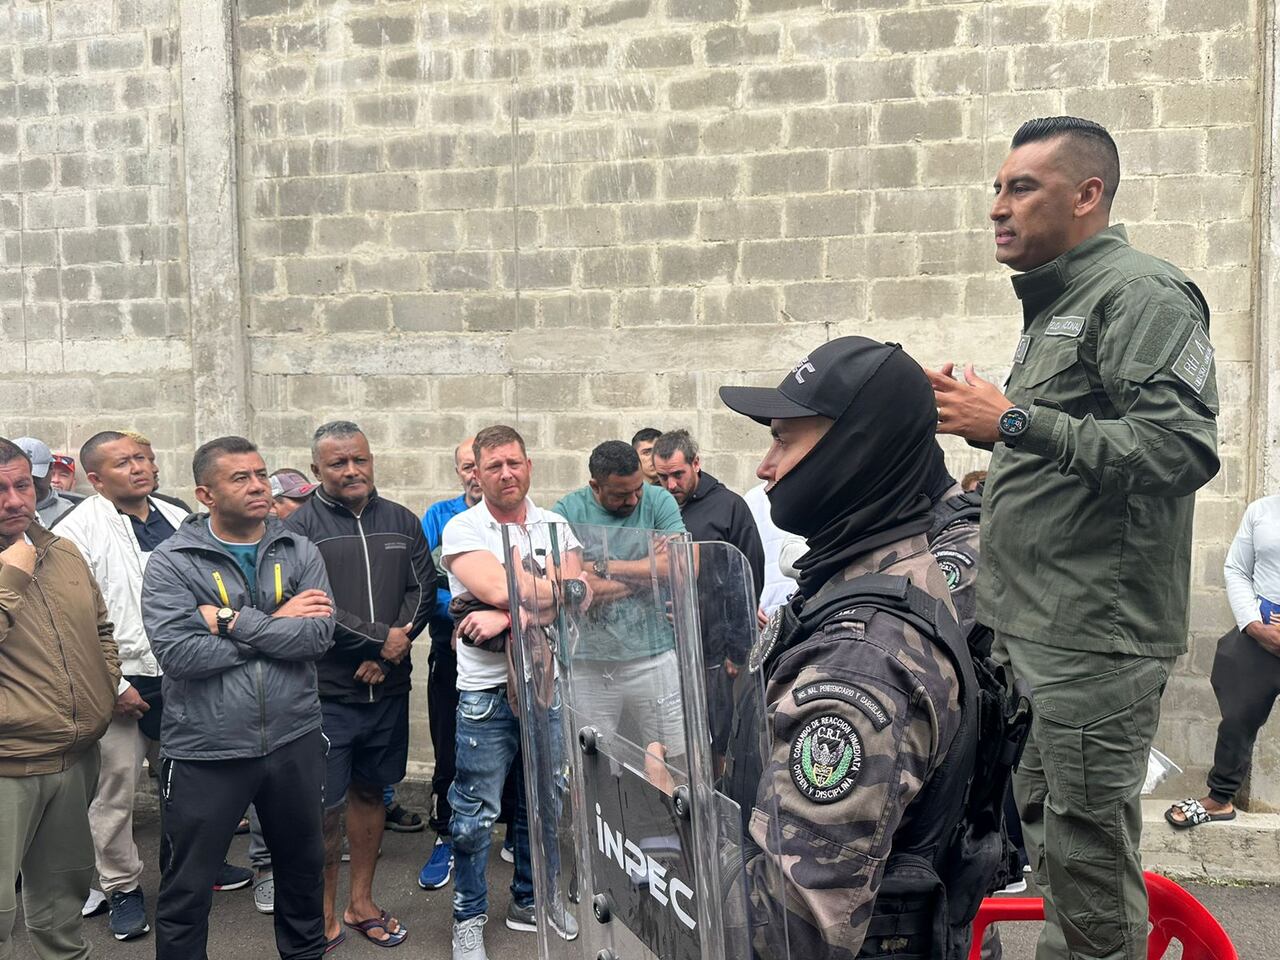 Extraditables en La Picota convirtieron un dispensador de agua en una particular caleta para celulares